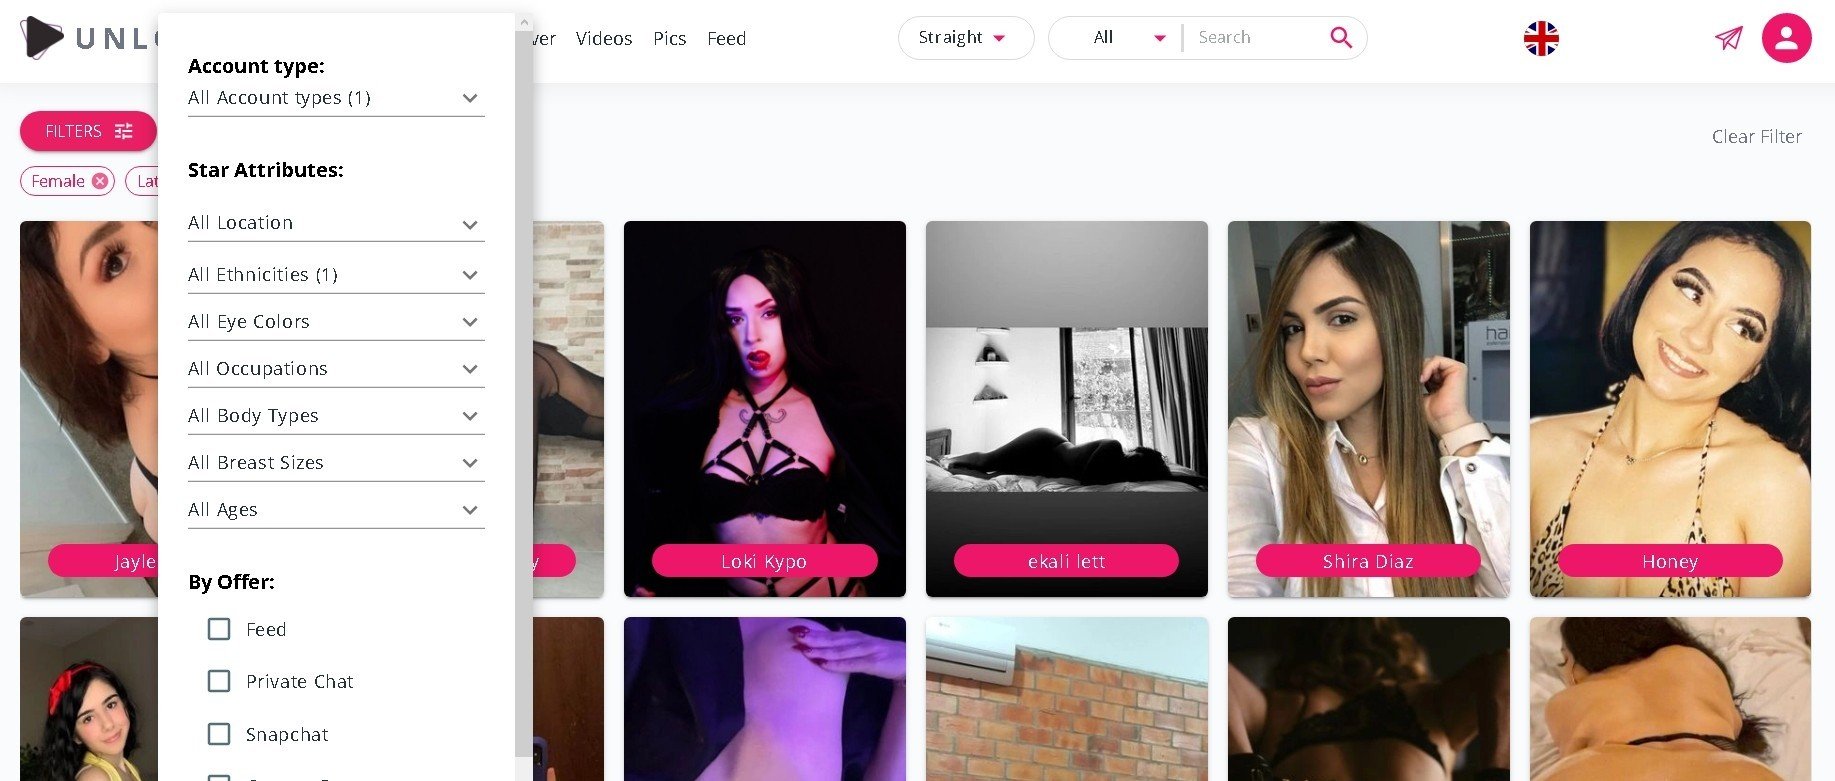 Аналоги Onlyfans где найти интимные фото стримеров блогеров и моделей